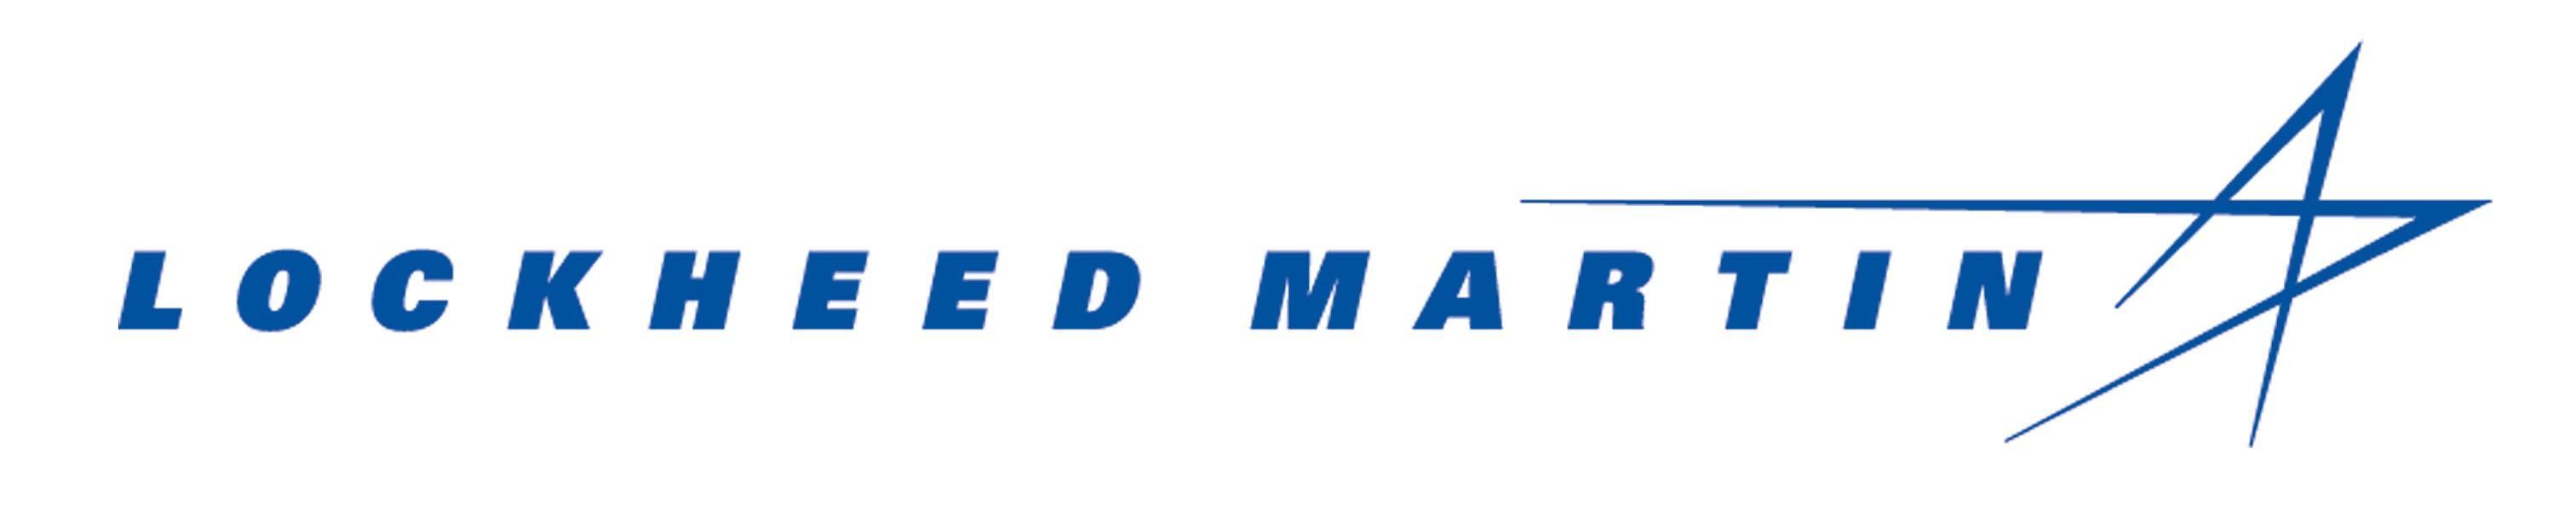 Locheed Martin Logo - Lockheed Martin Logo Clipart Image